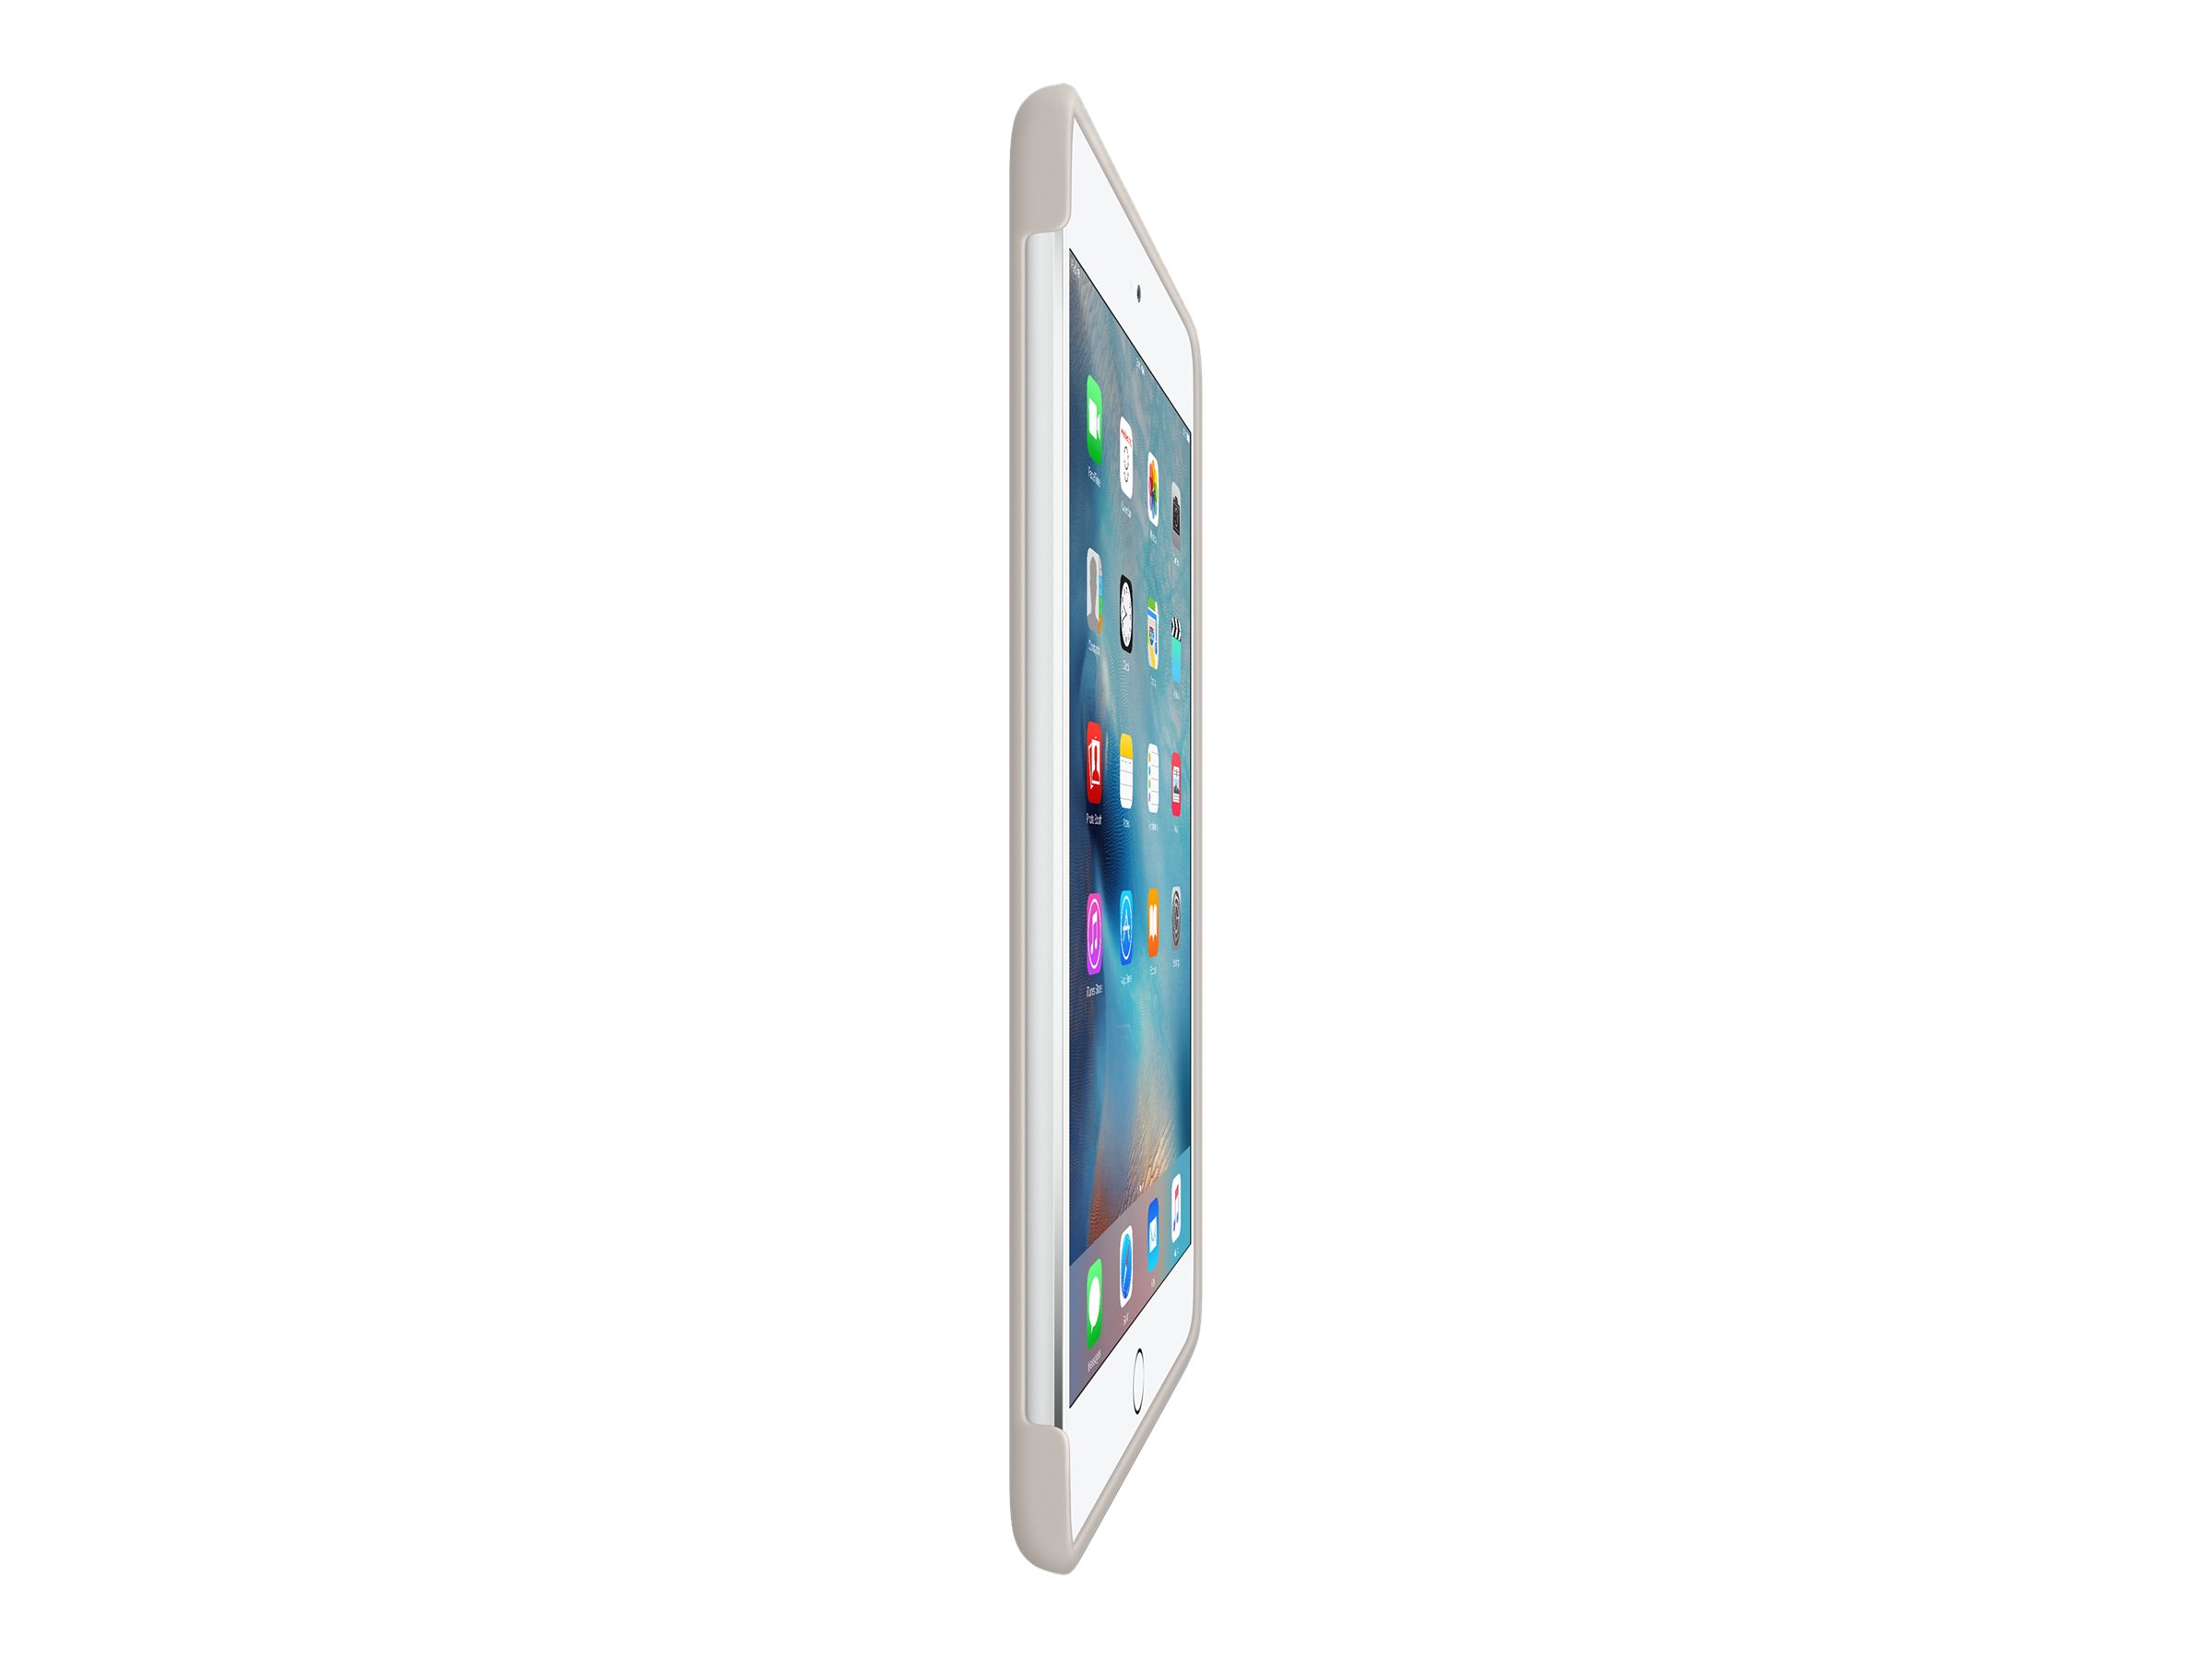 Apple iPad mini 4 Silicone Case, Stone - image 5 of 5